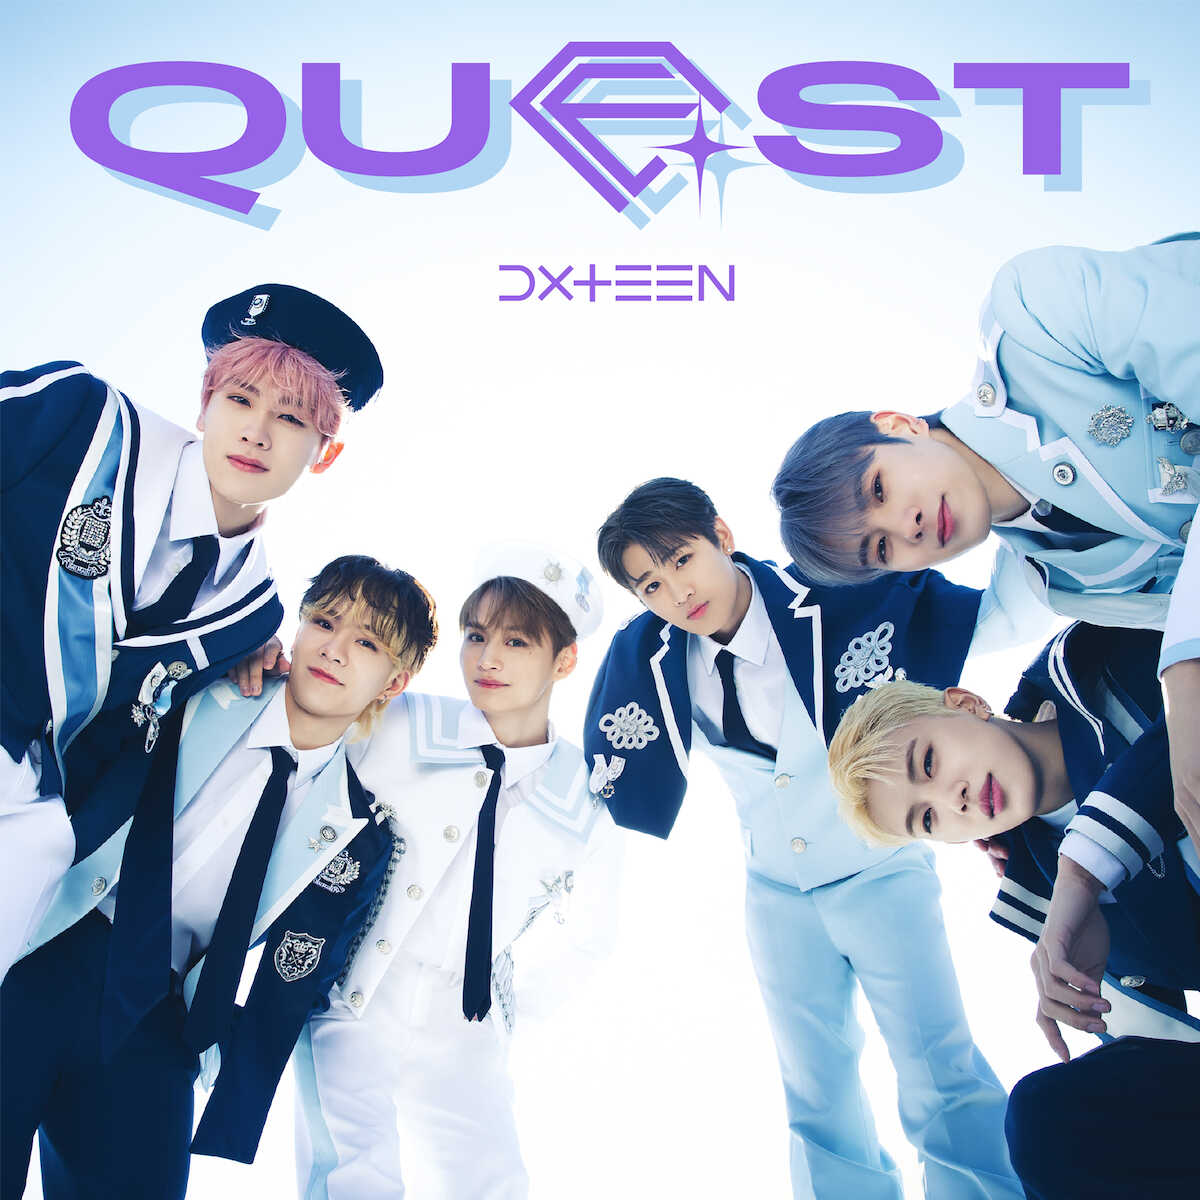 DXTEEN 自身初のアルバム「Quest」 7月17日発売 グループが歩んできたストーリーになぞったトラックリストに